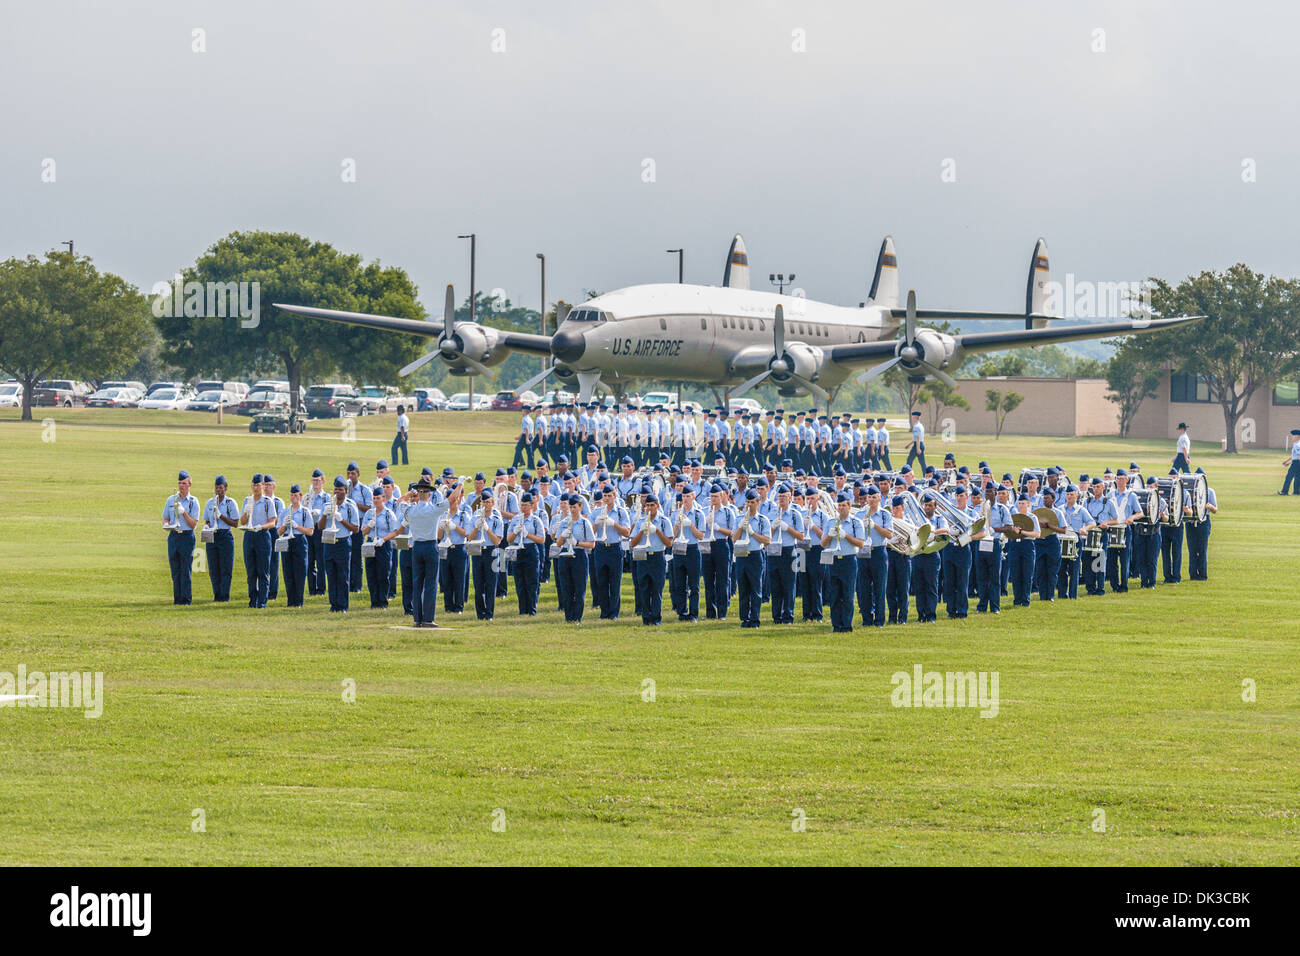 Banda de la USAF durante la reproducción de la Fuerza Aérea de los Estados Unidos la graduación de capacitación básica en San Antonio, Texas. Foto de stock